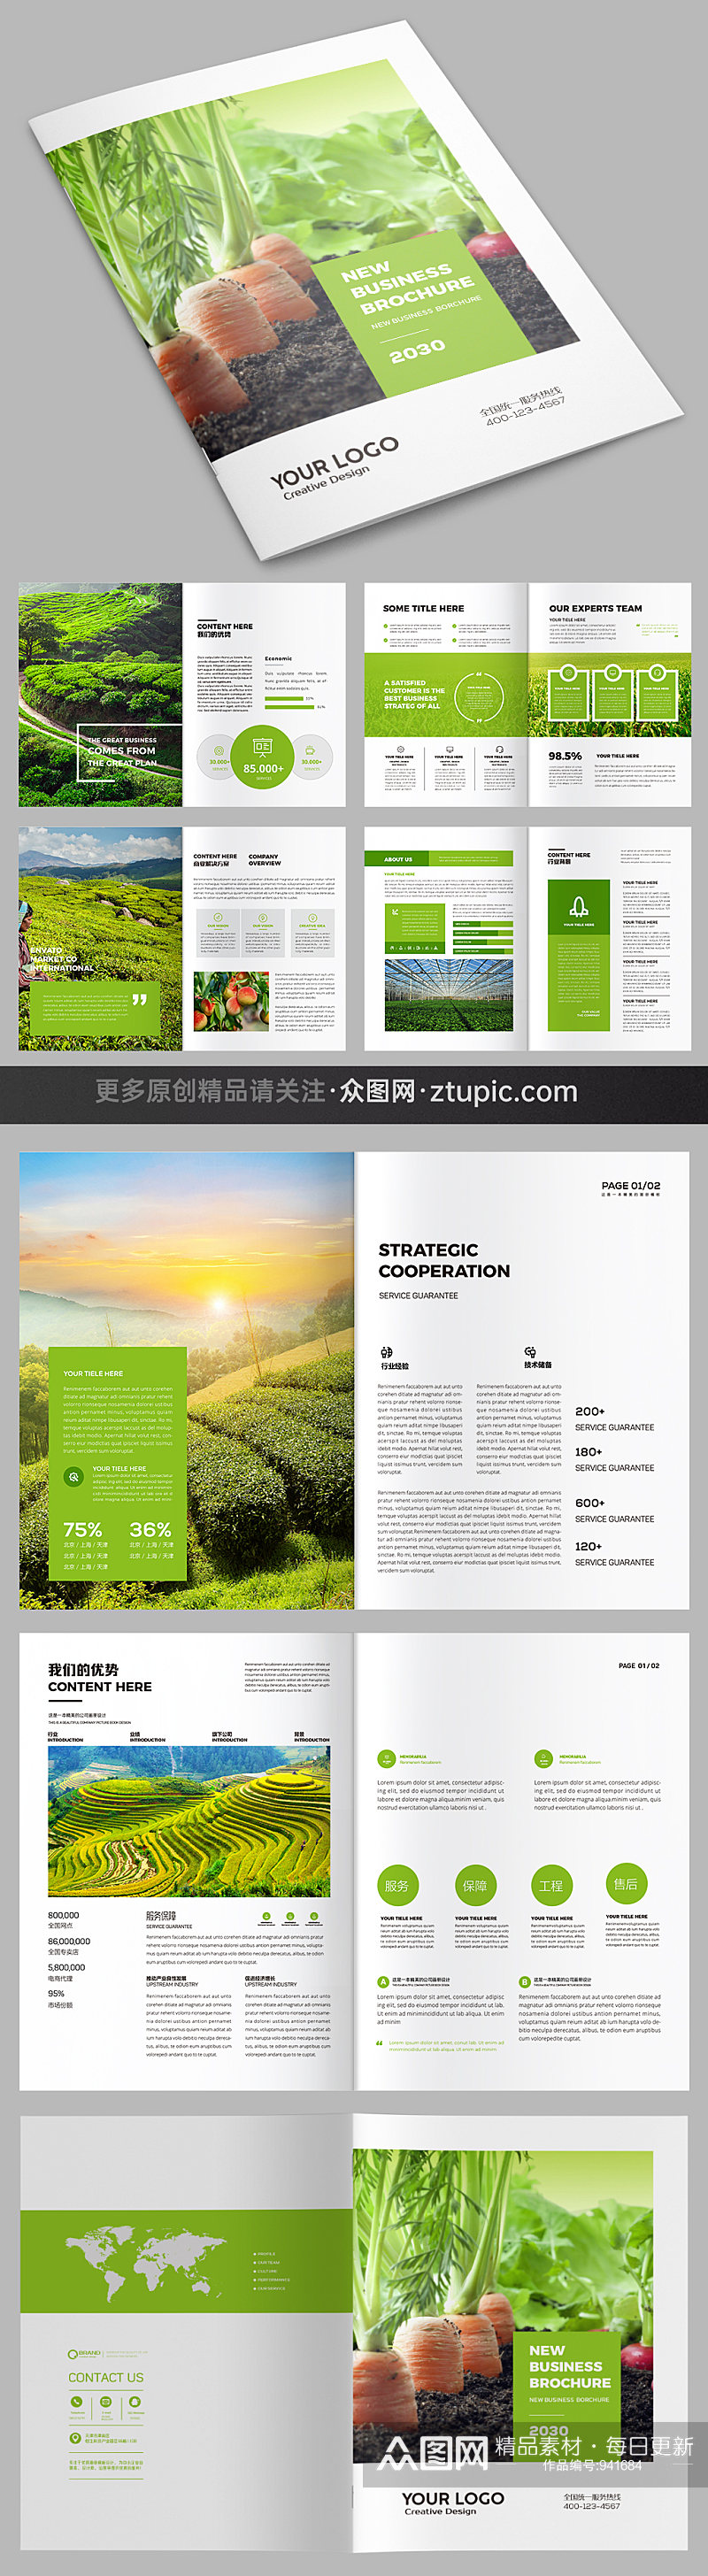 绿色农业宣传册农产品画册设计模板素材